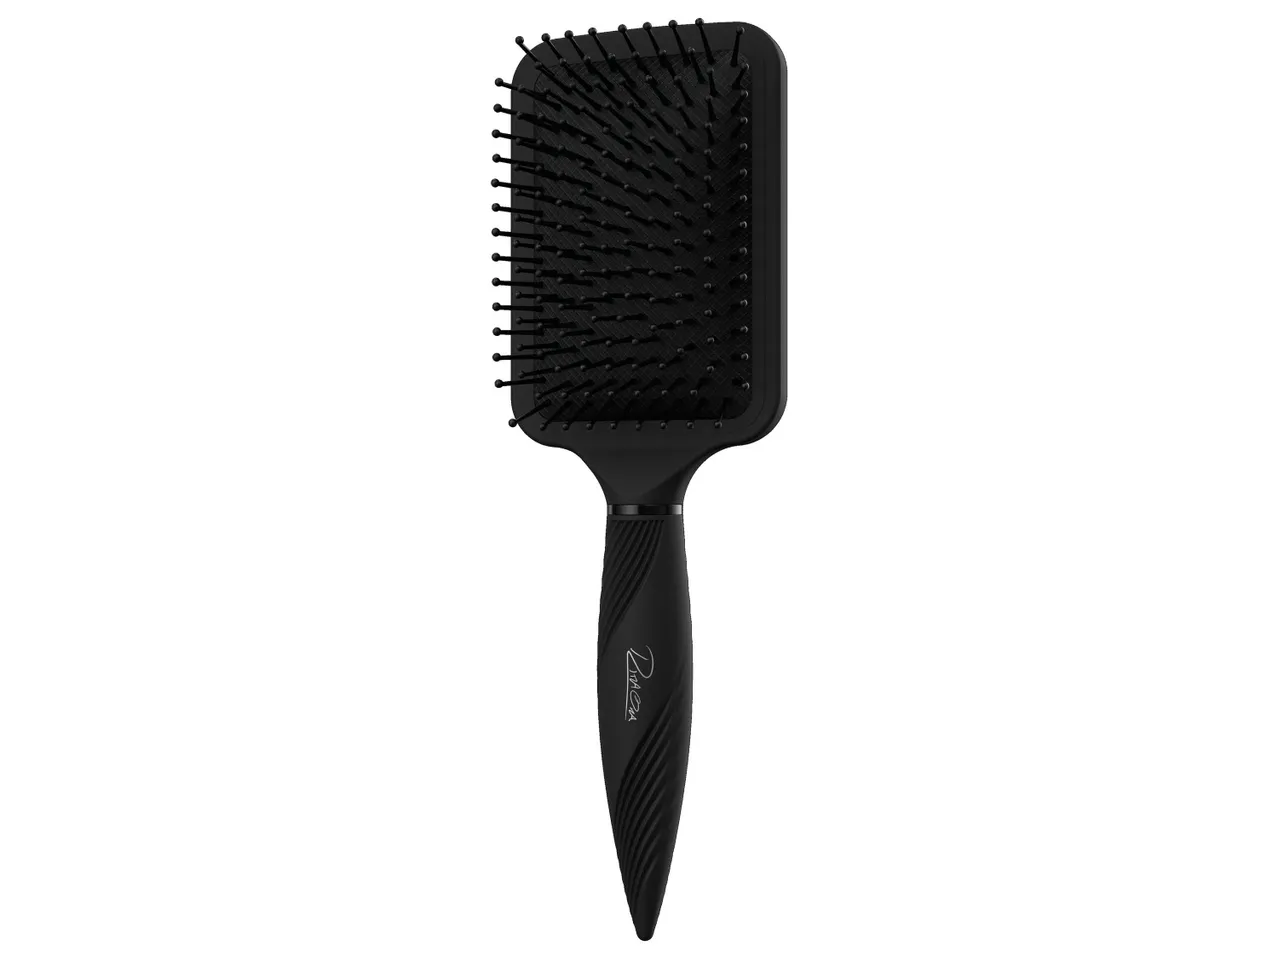 Spazzola per capelli Rita Ora , prezzo 2.99 EUR